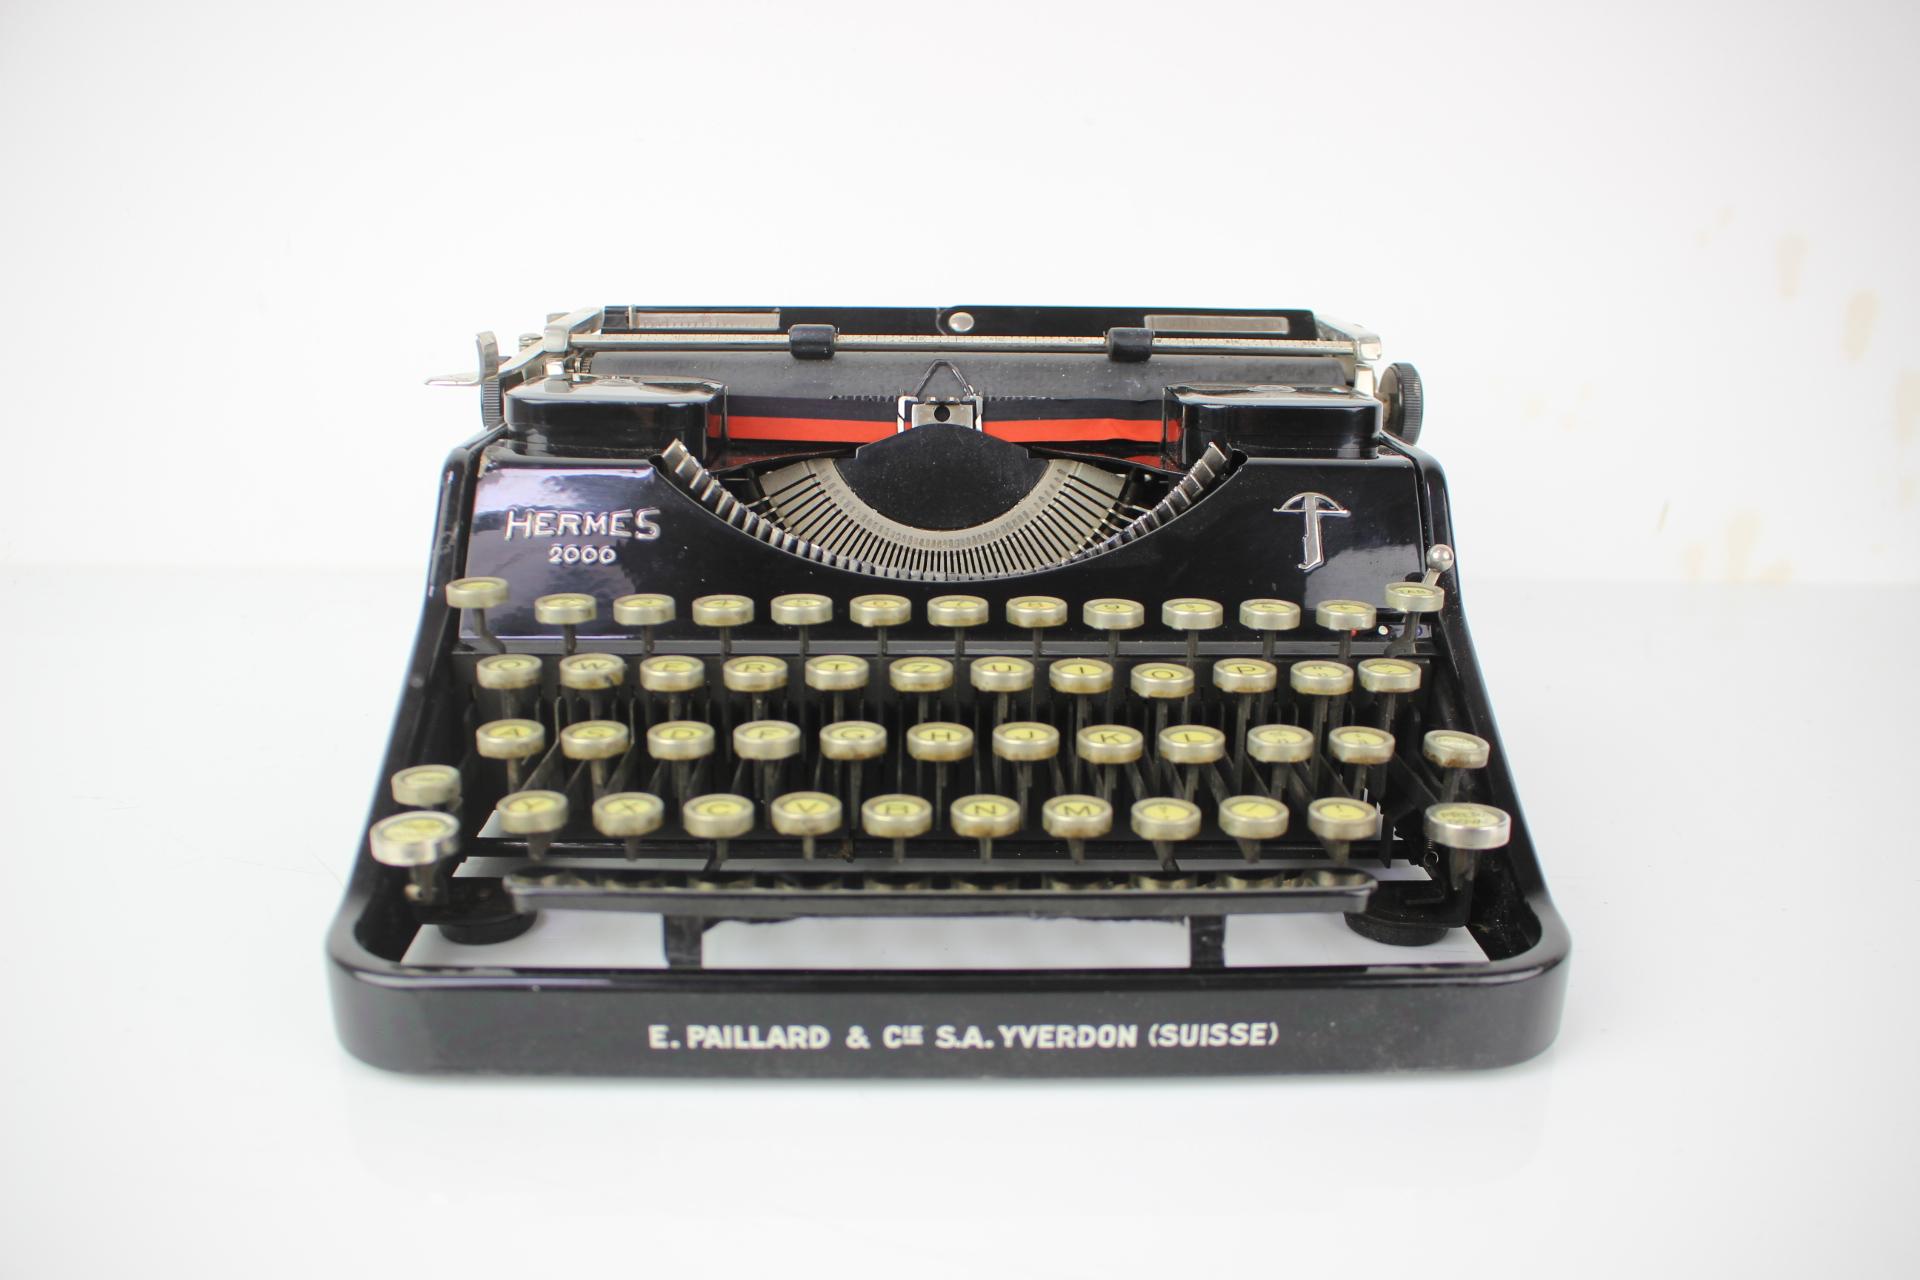 hermes 2000 typewriter